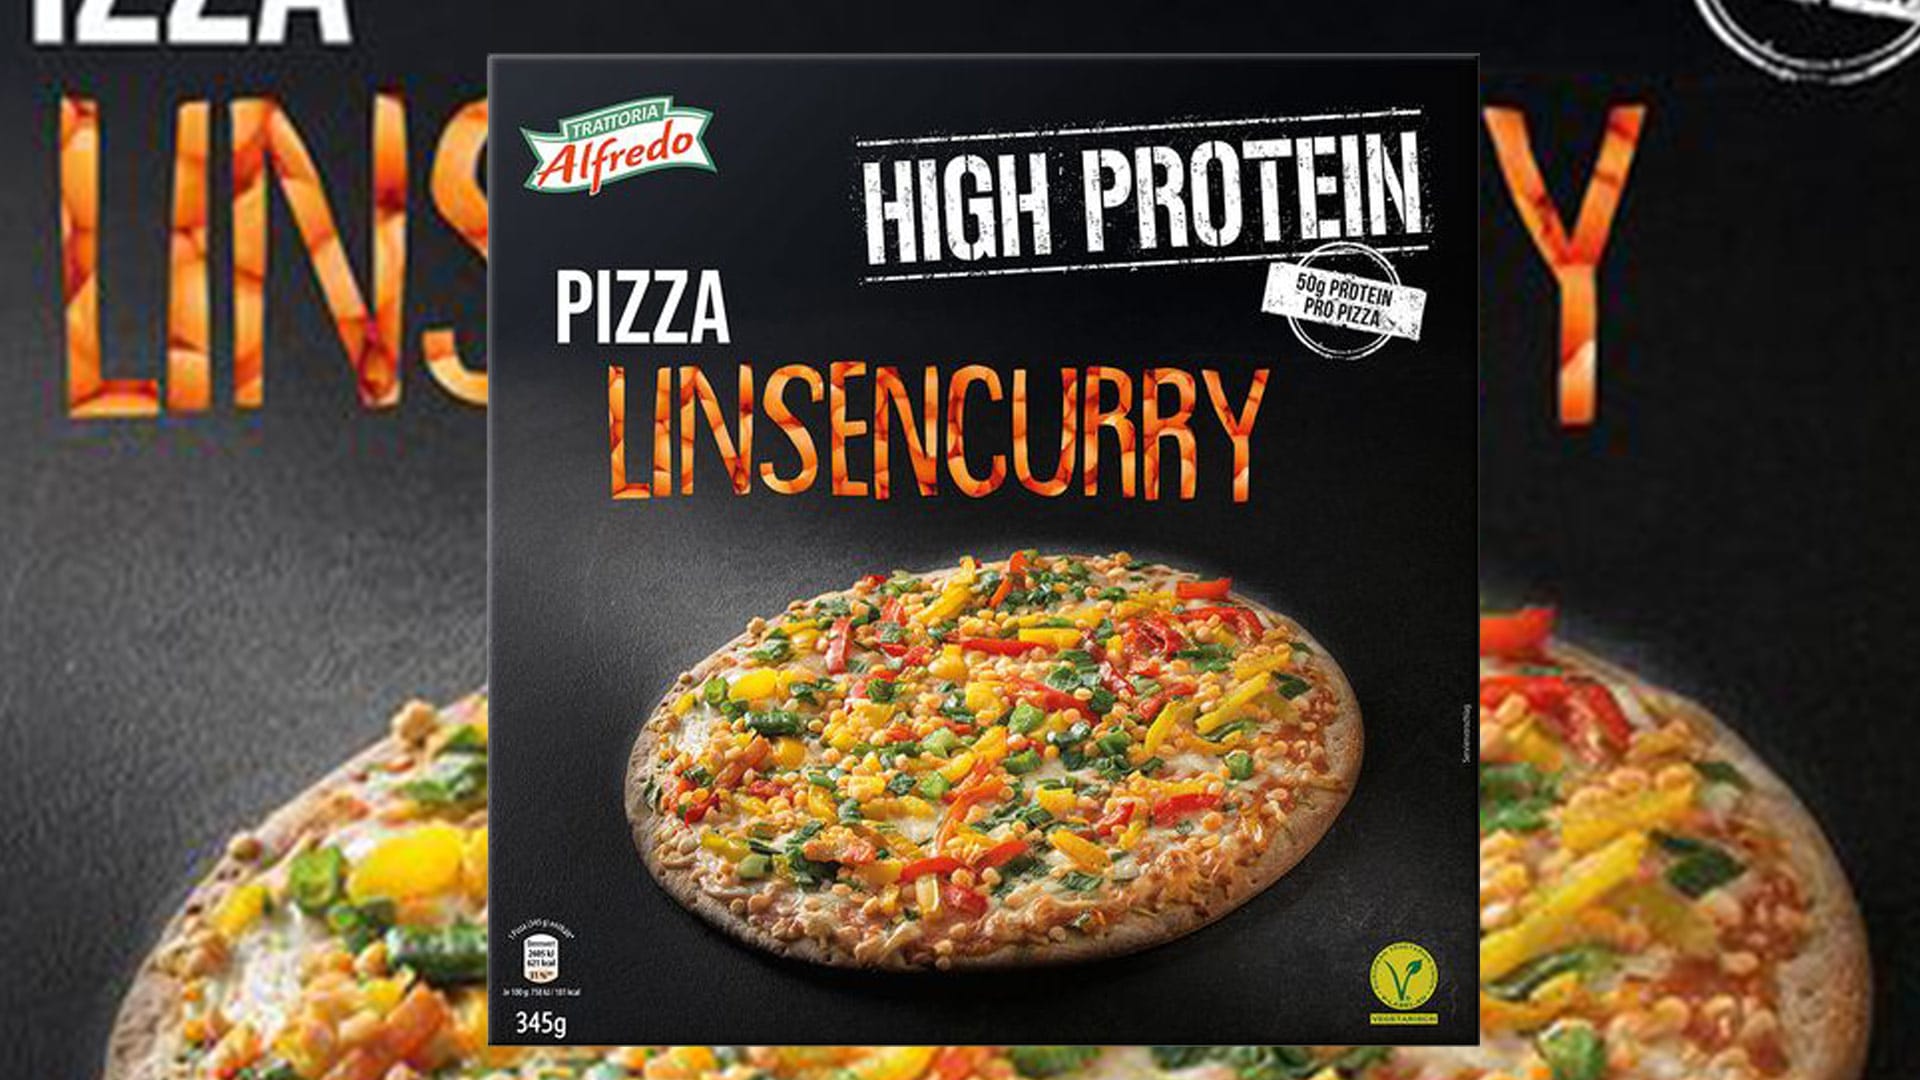 Bild zum Thema High Protein Pizza bei Lidl seit 17.09.20 im Angebot